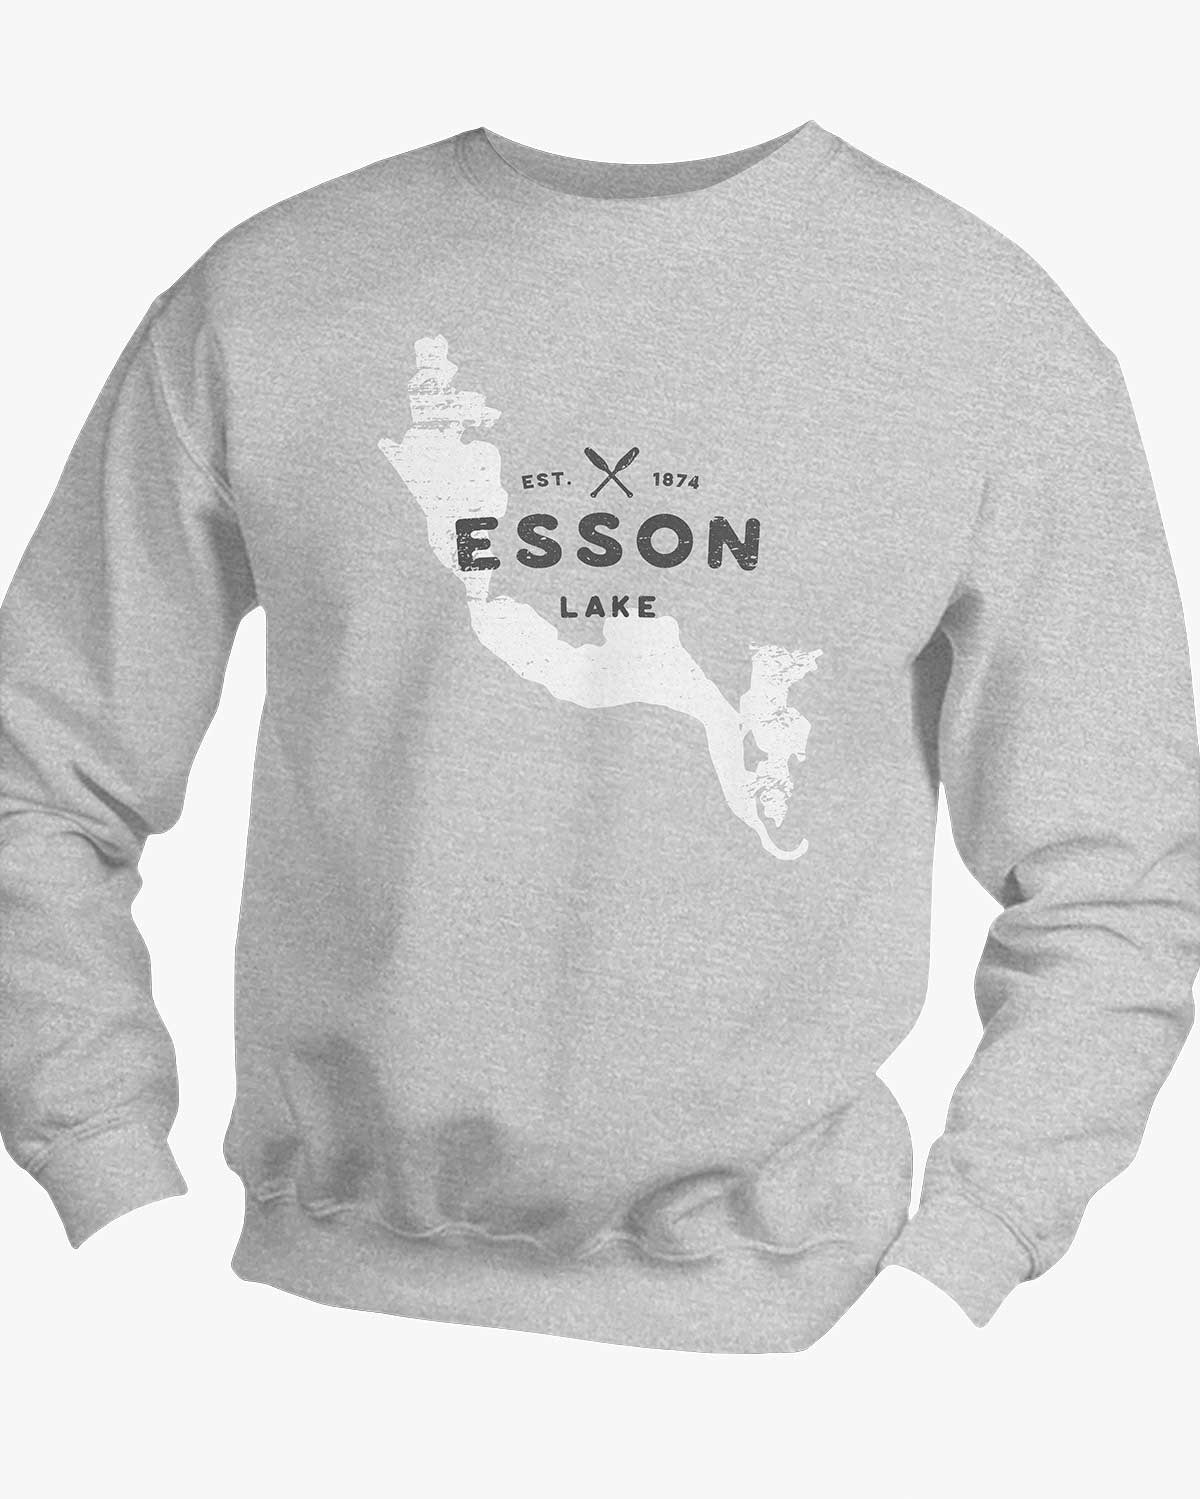 Lake Series - Esson Lake - Sweater